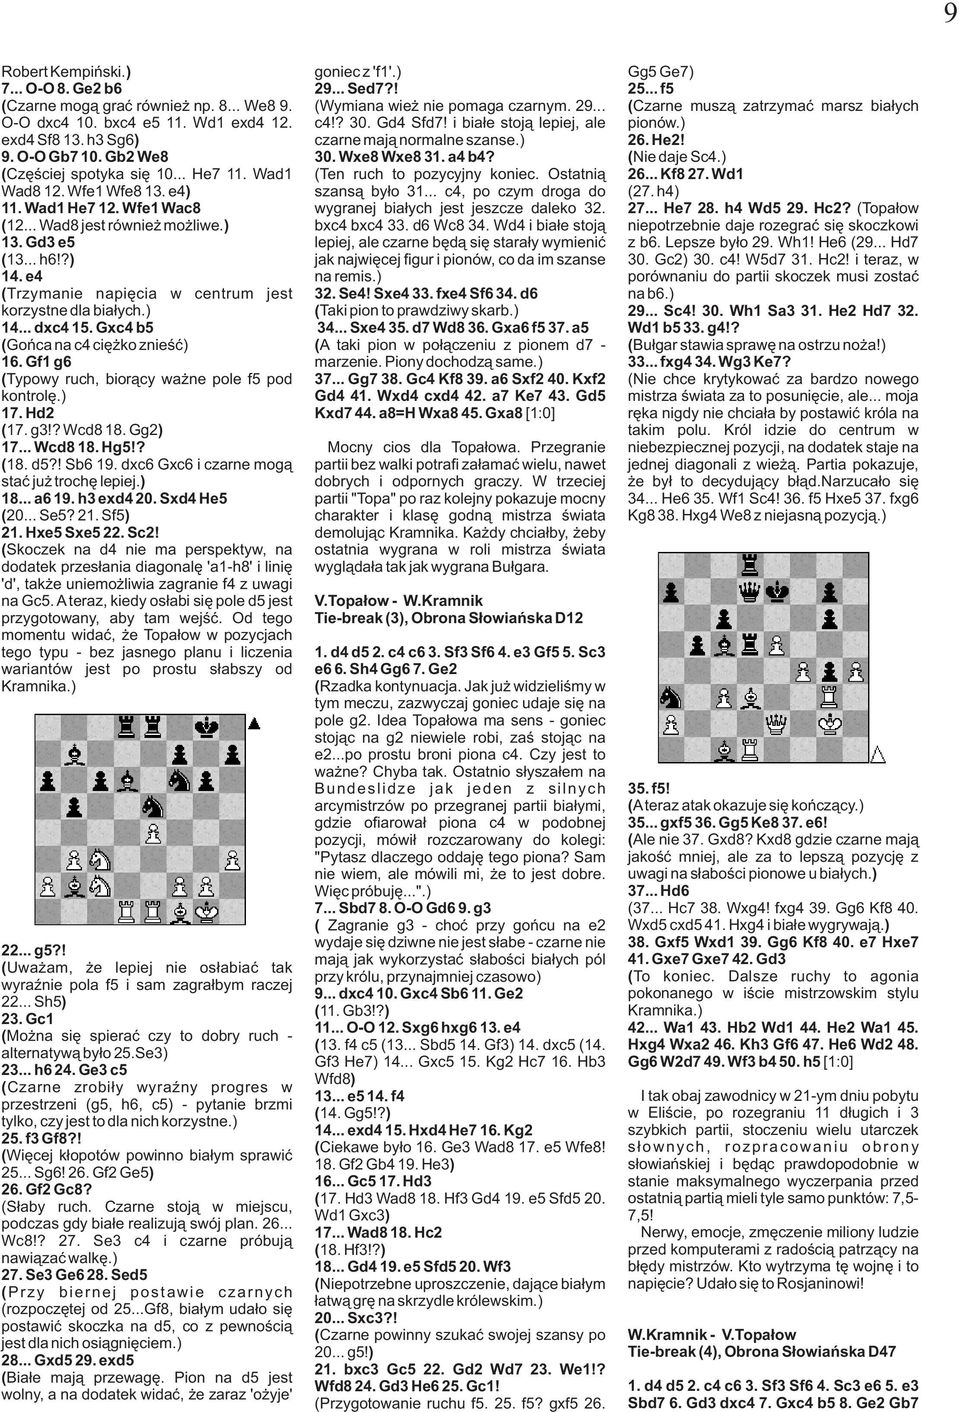 Gxc4 b5 ( Gońca na c4 ciężko znieść) 16. Gf1 g6 ( Typowy ruch, biorący ważne pole f5 pod kontrolę.) 17. Hd2 ( 17. g3!? Wcd8 18. Gg2) 17... Wcd8 18. Hg5!? ( 18. d5?! Sb6 19.